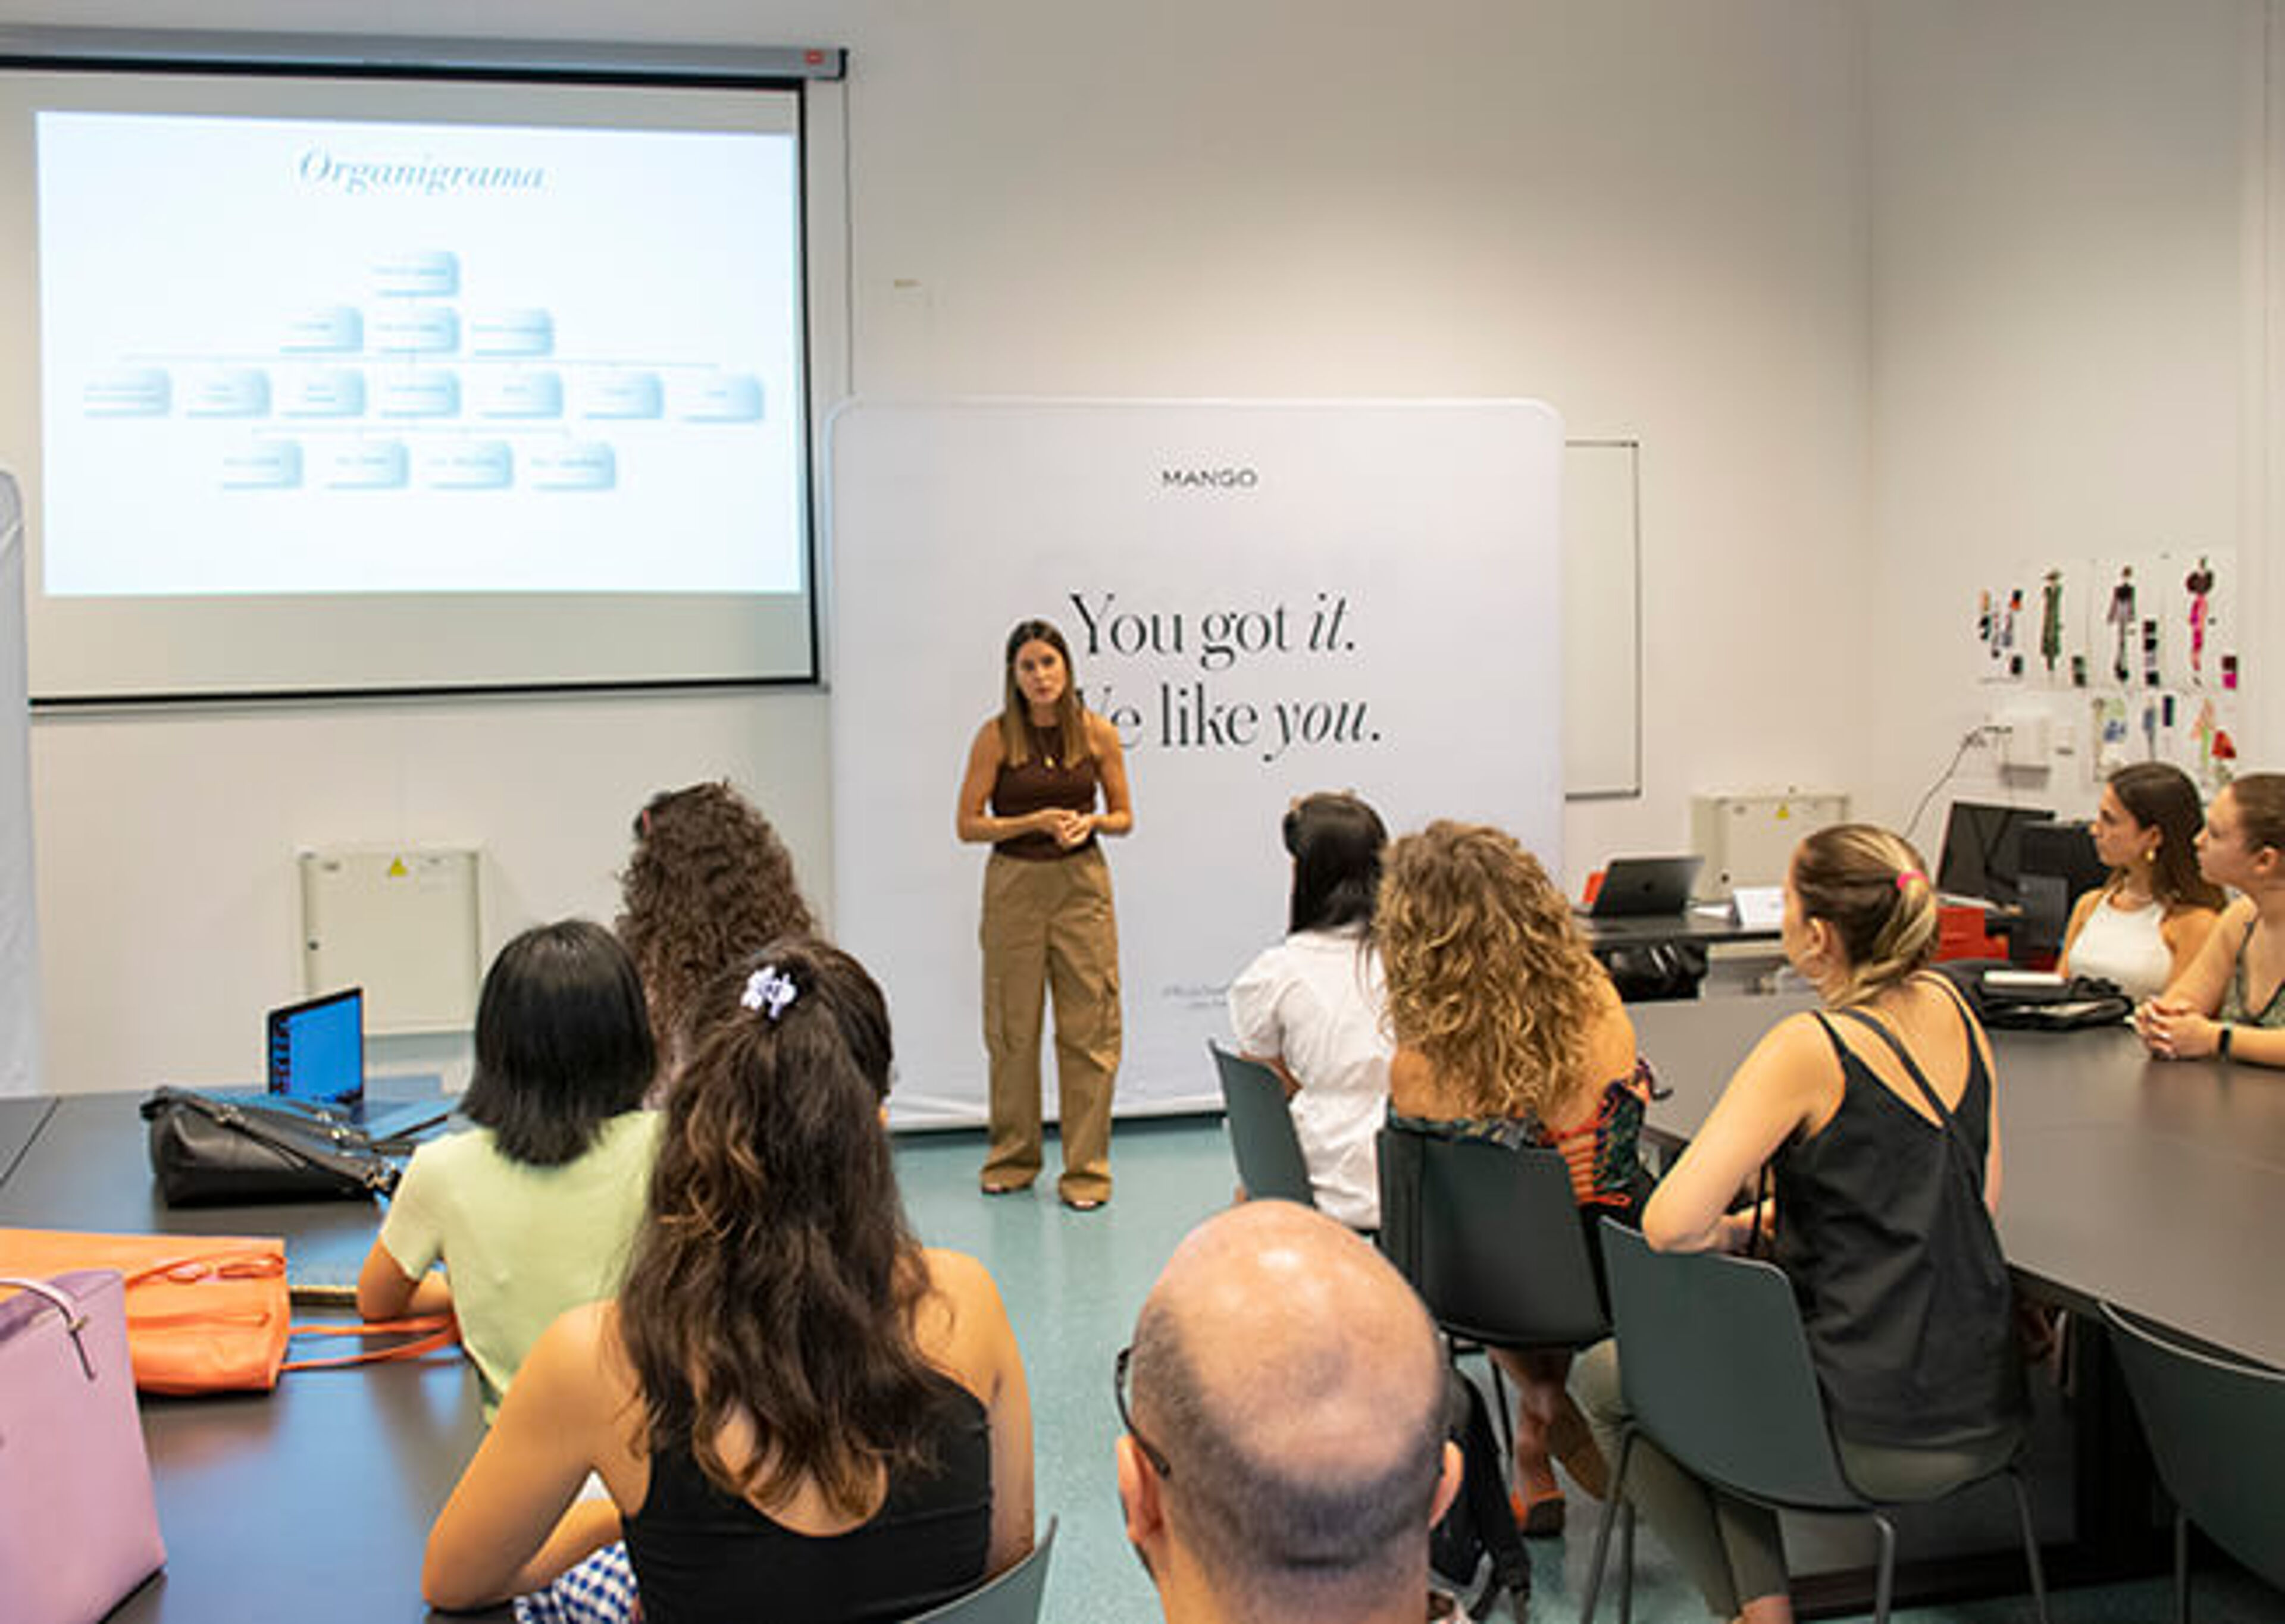 Un profesional lidera un taller de formación en una sala bien iluminada con participantes atentos.